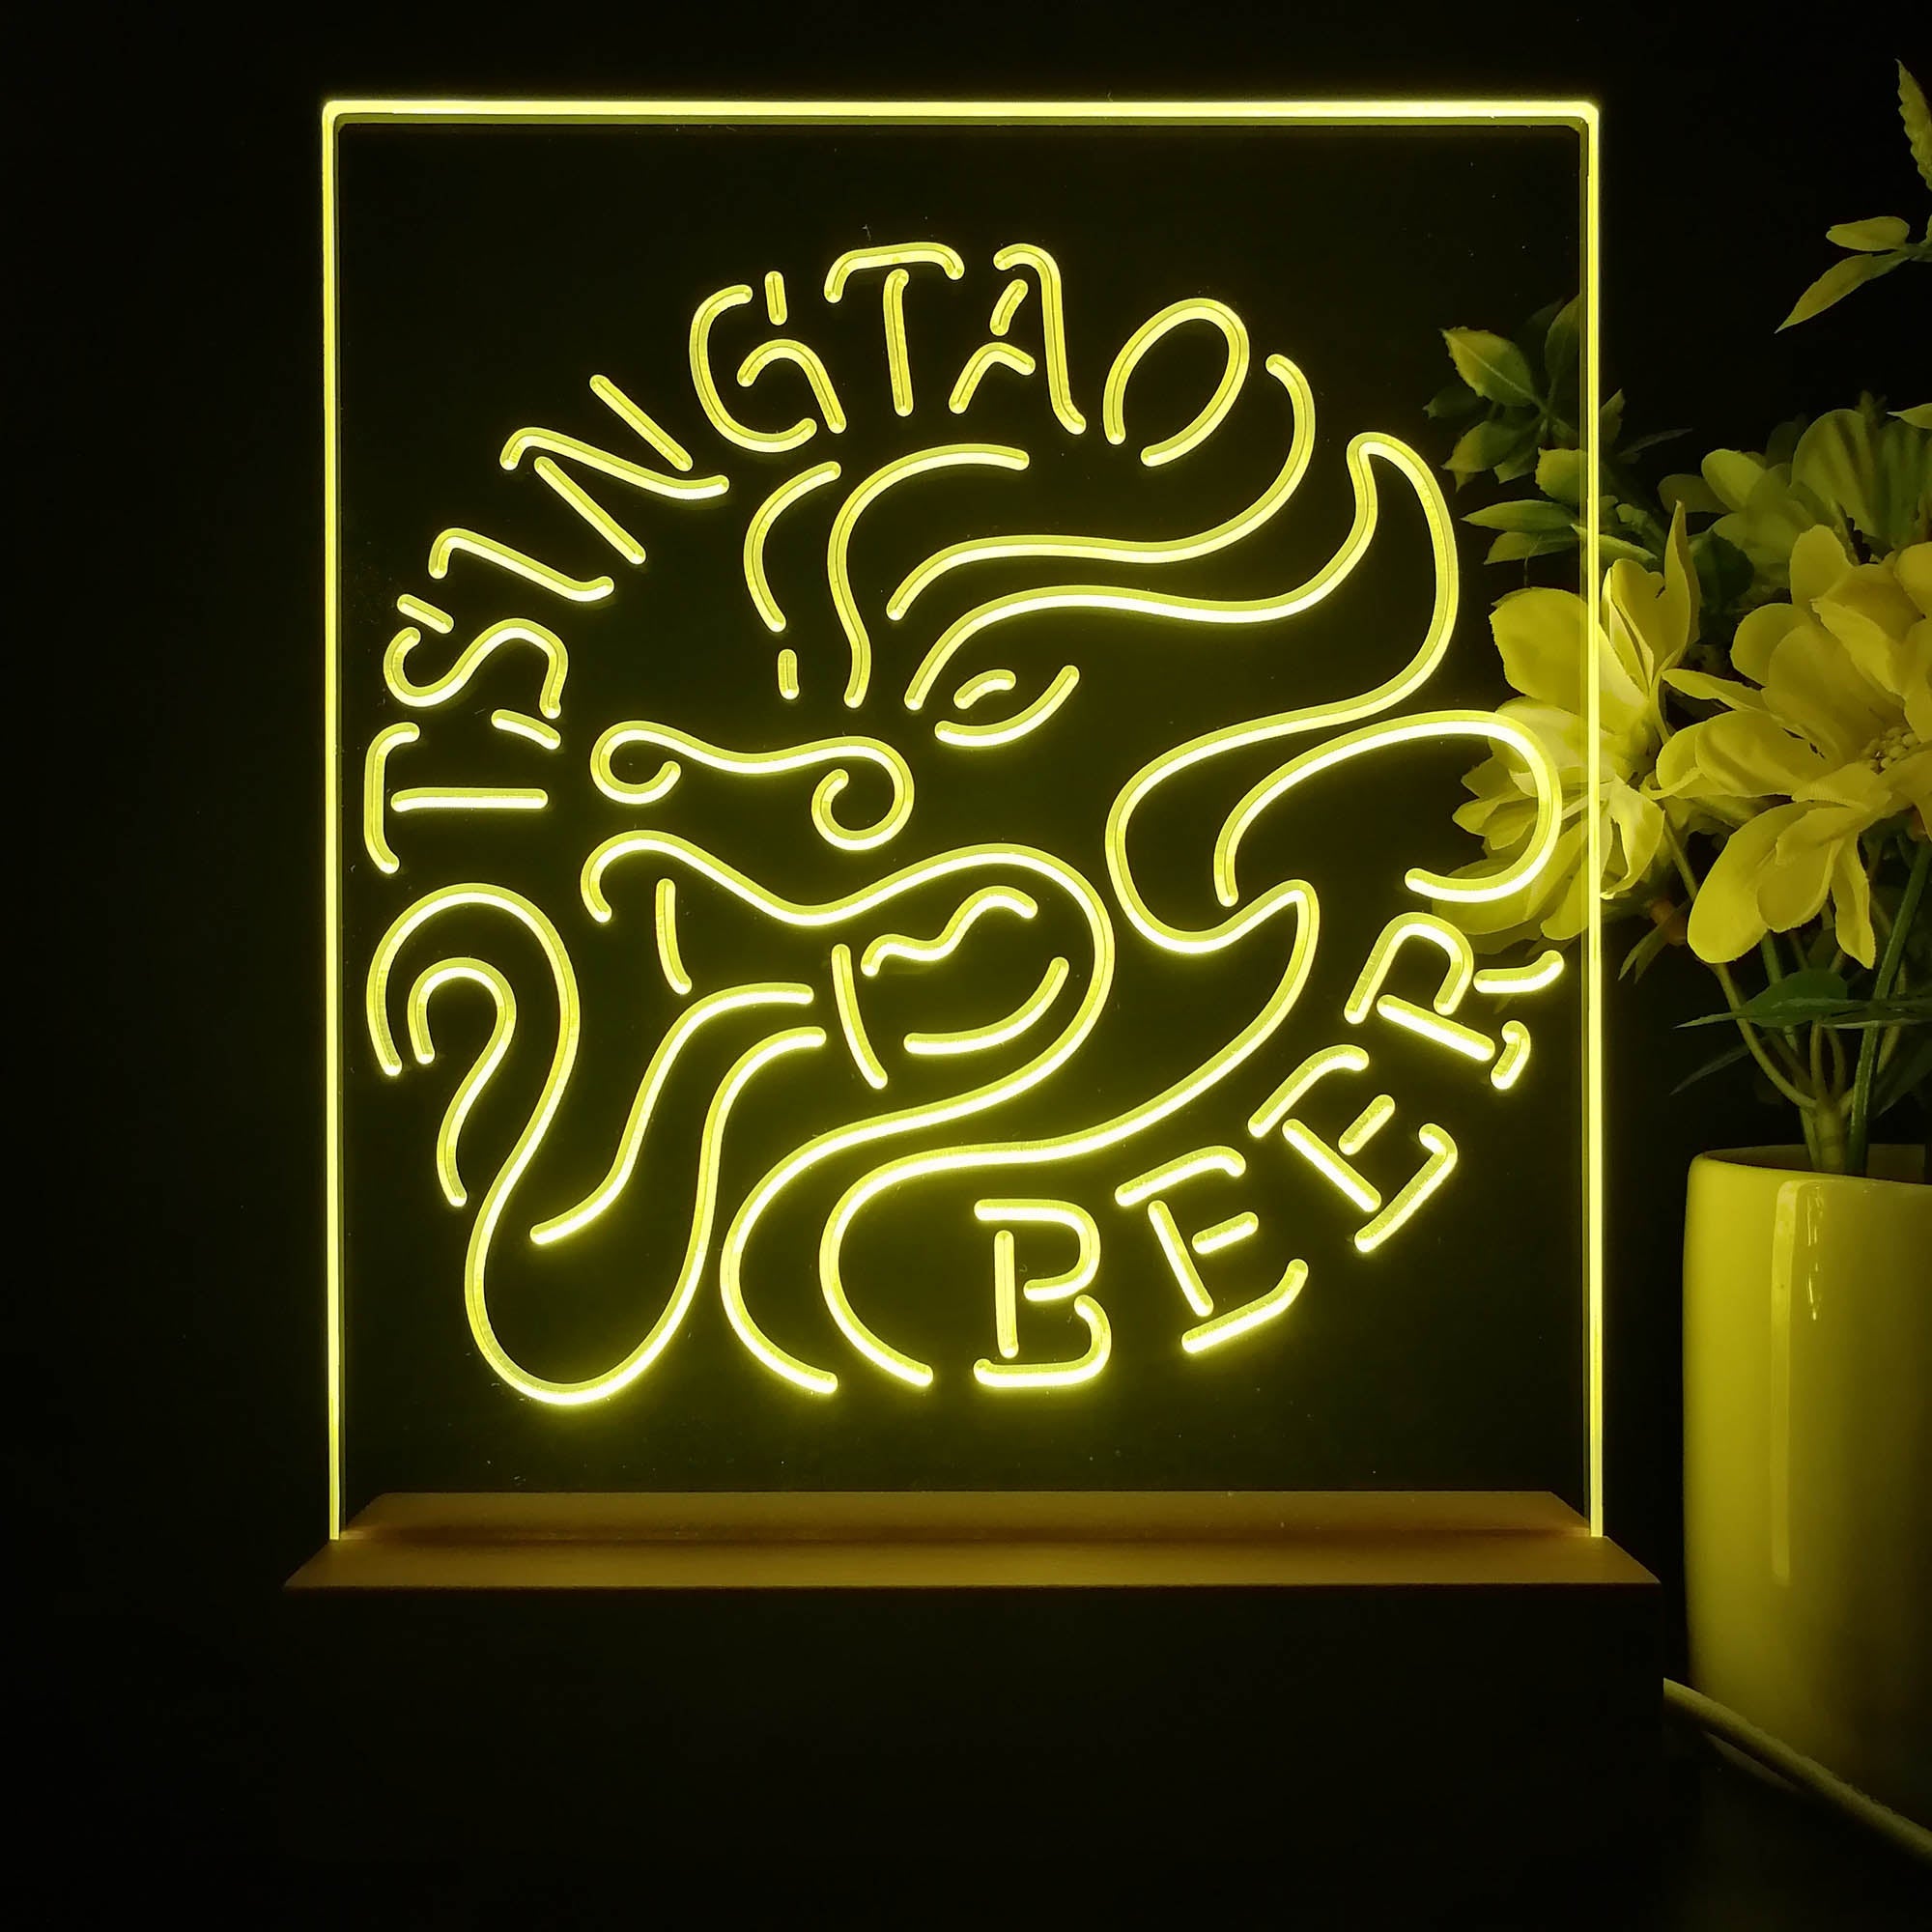 Tsingtao Beer Dragon Man Cave 3D Illusion Night Light Desk Lamp